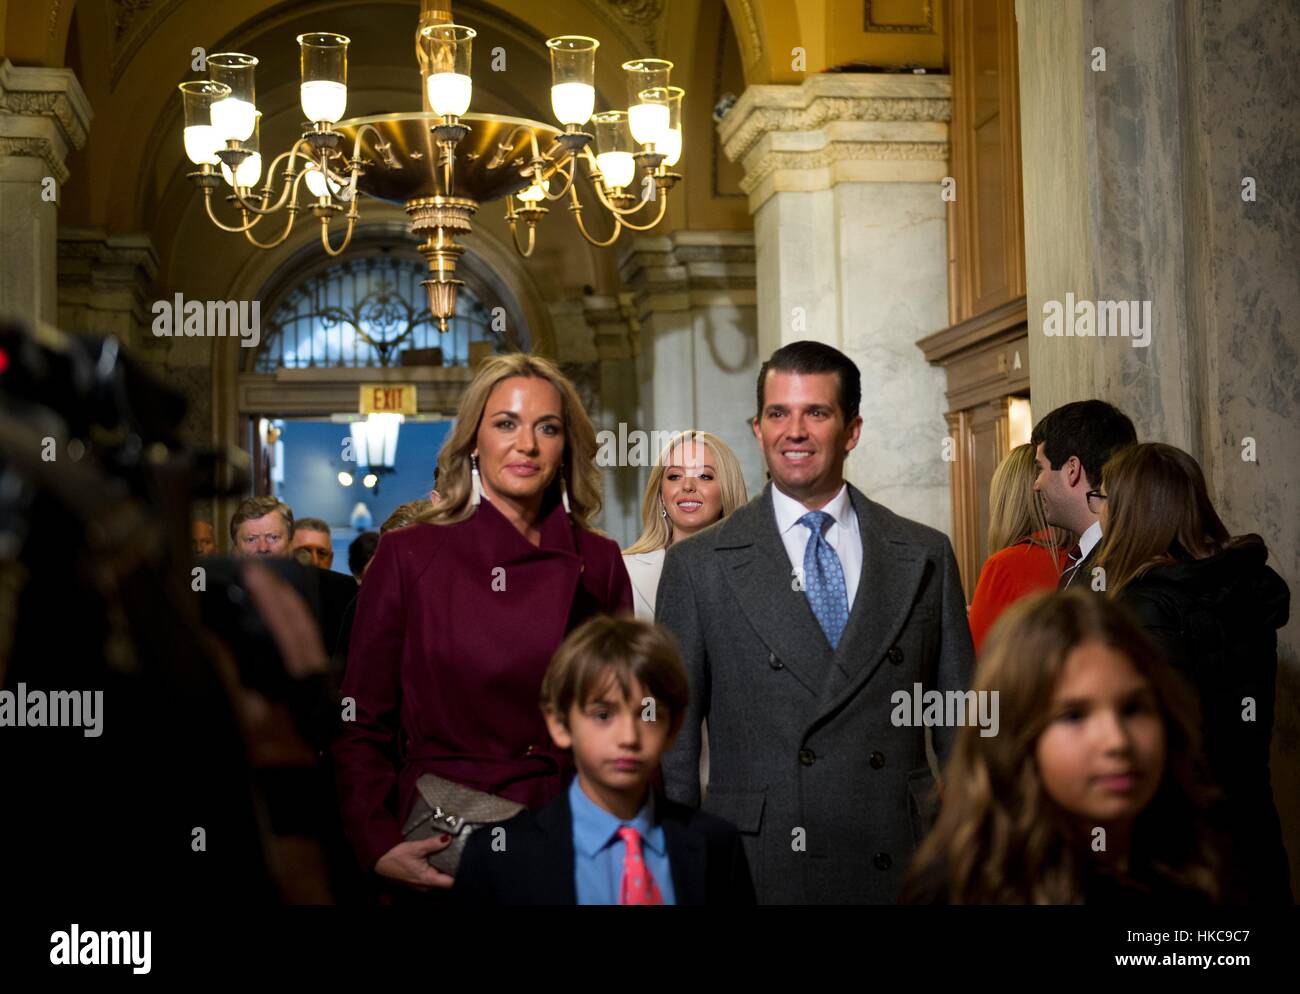 Présidentielle américaine fils Eric Trump et épouse Vanessa Trump arrivent à la capitale américaine avec sa famille pour la 58e Cérémonie d'investiture le 20 janvier 2017 à Washington, DC. Banque D'Images